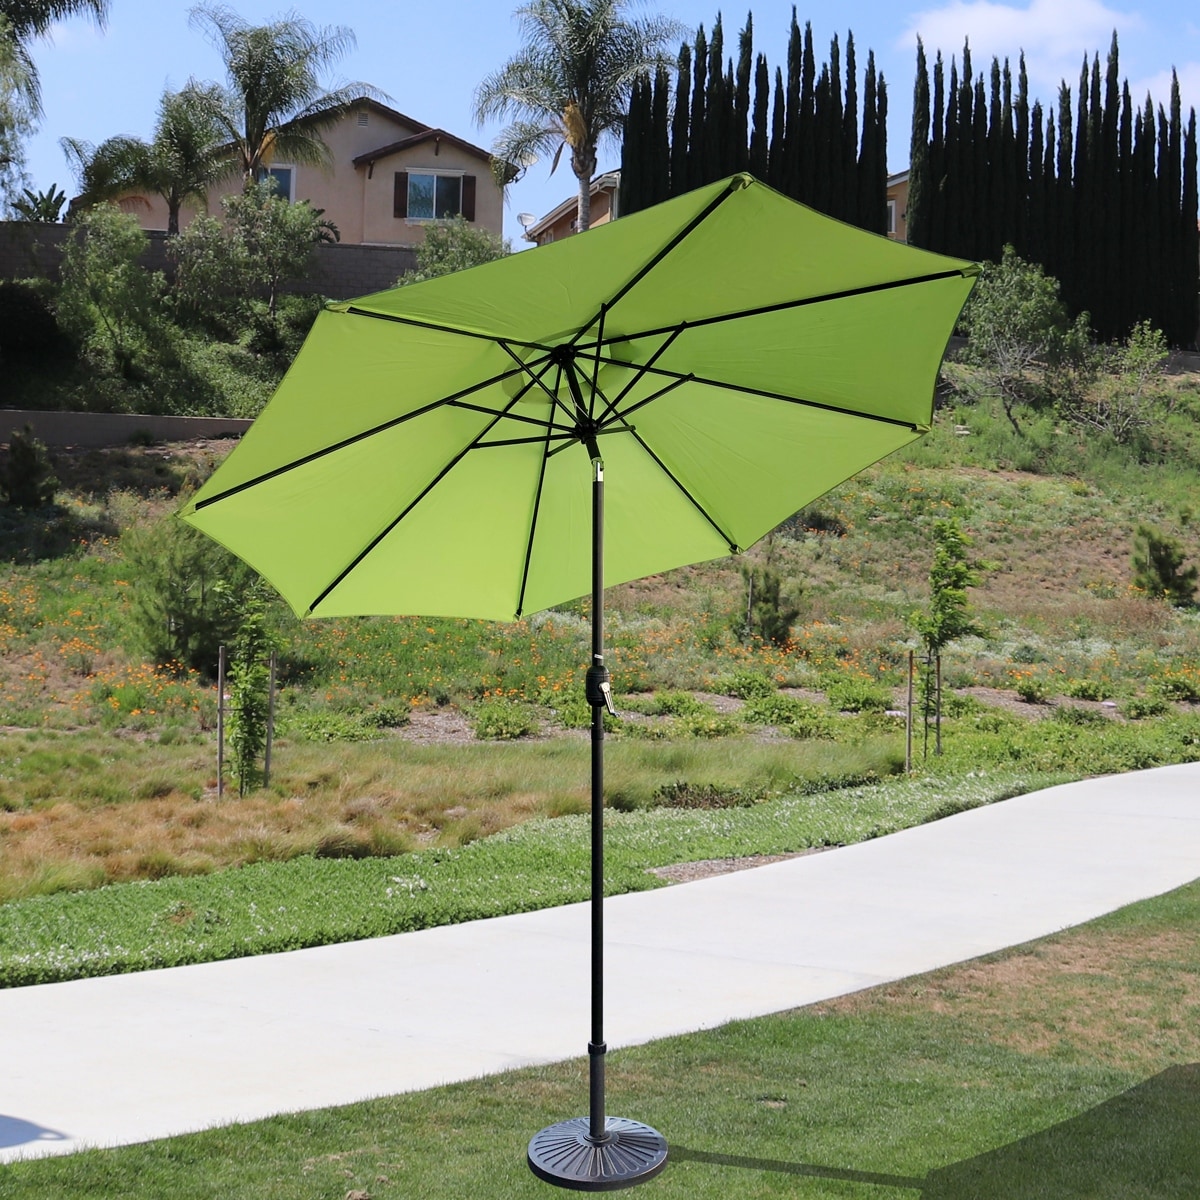 Balck an Sunnyglade 9' Patio Umbrella Outdoor Table Umbrella with 8 Sturdy Ribs 